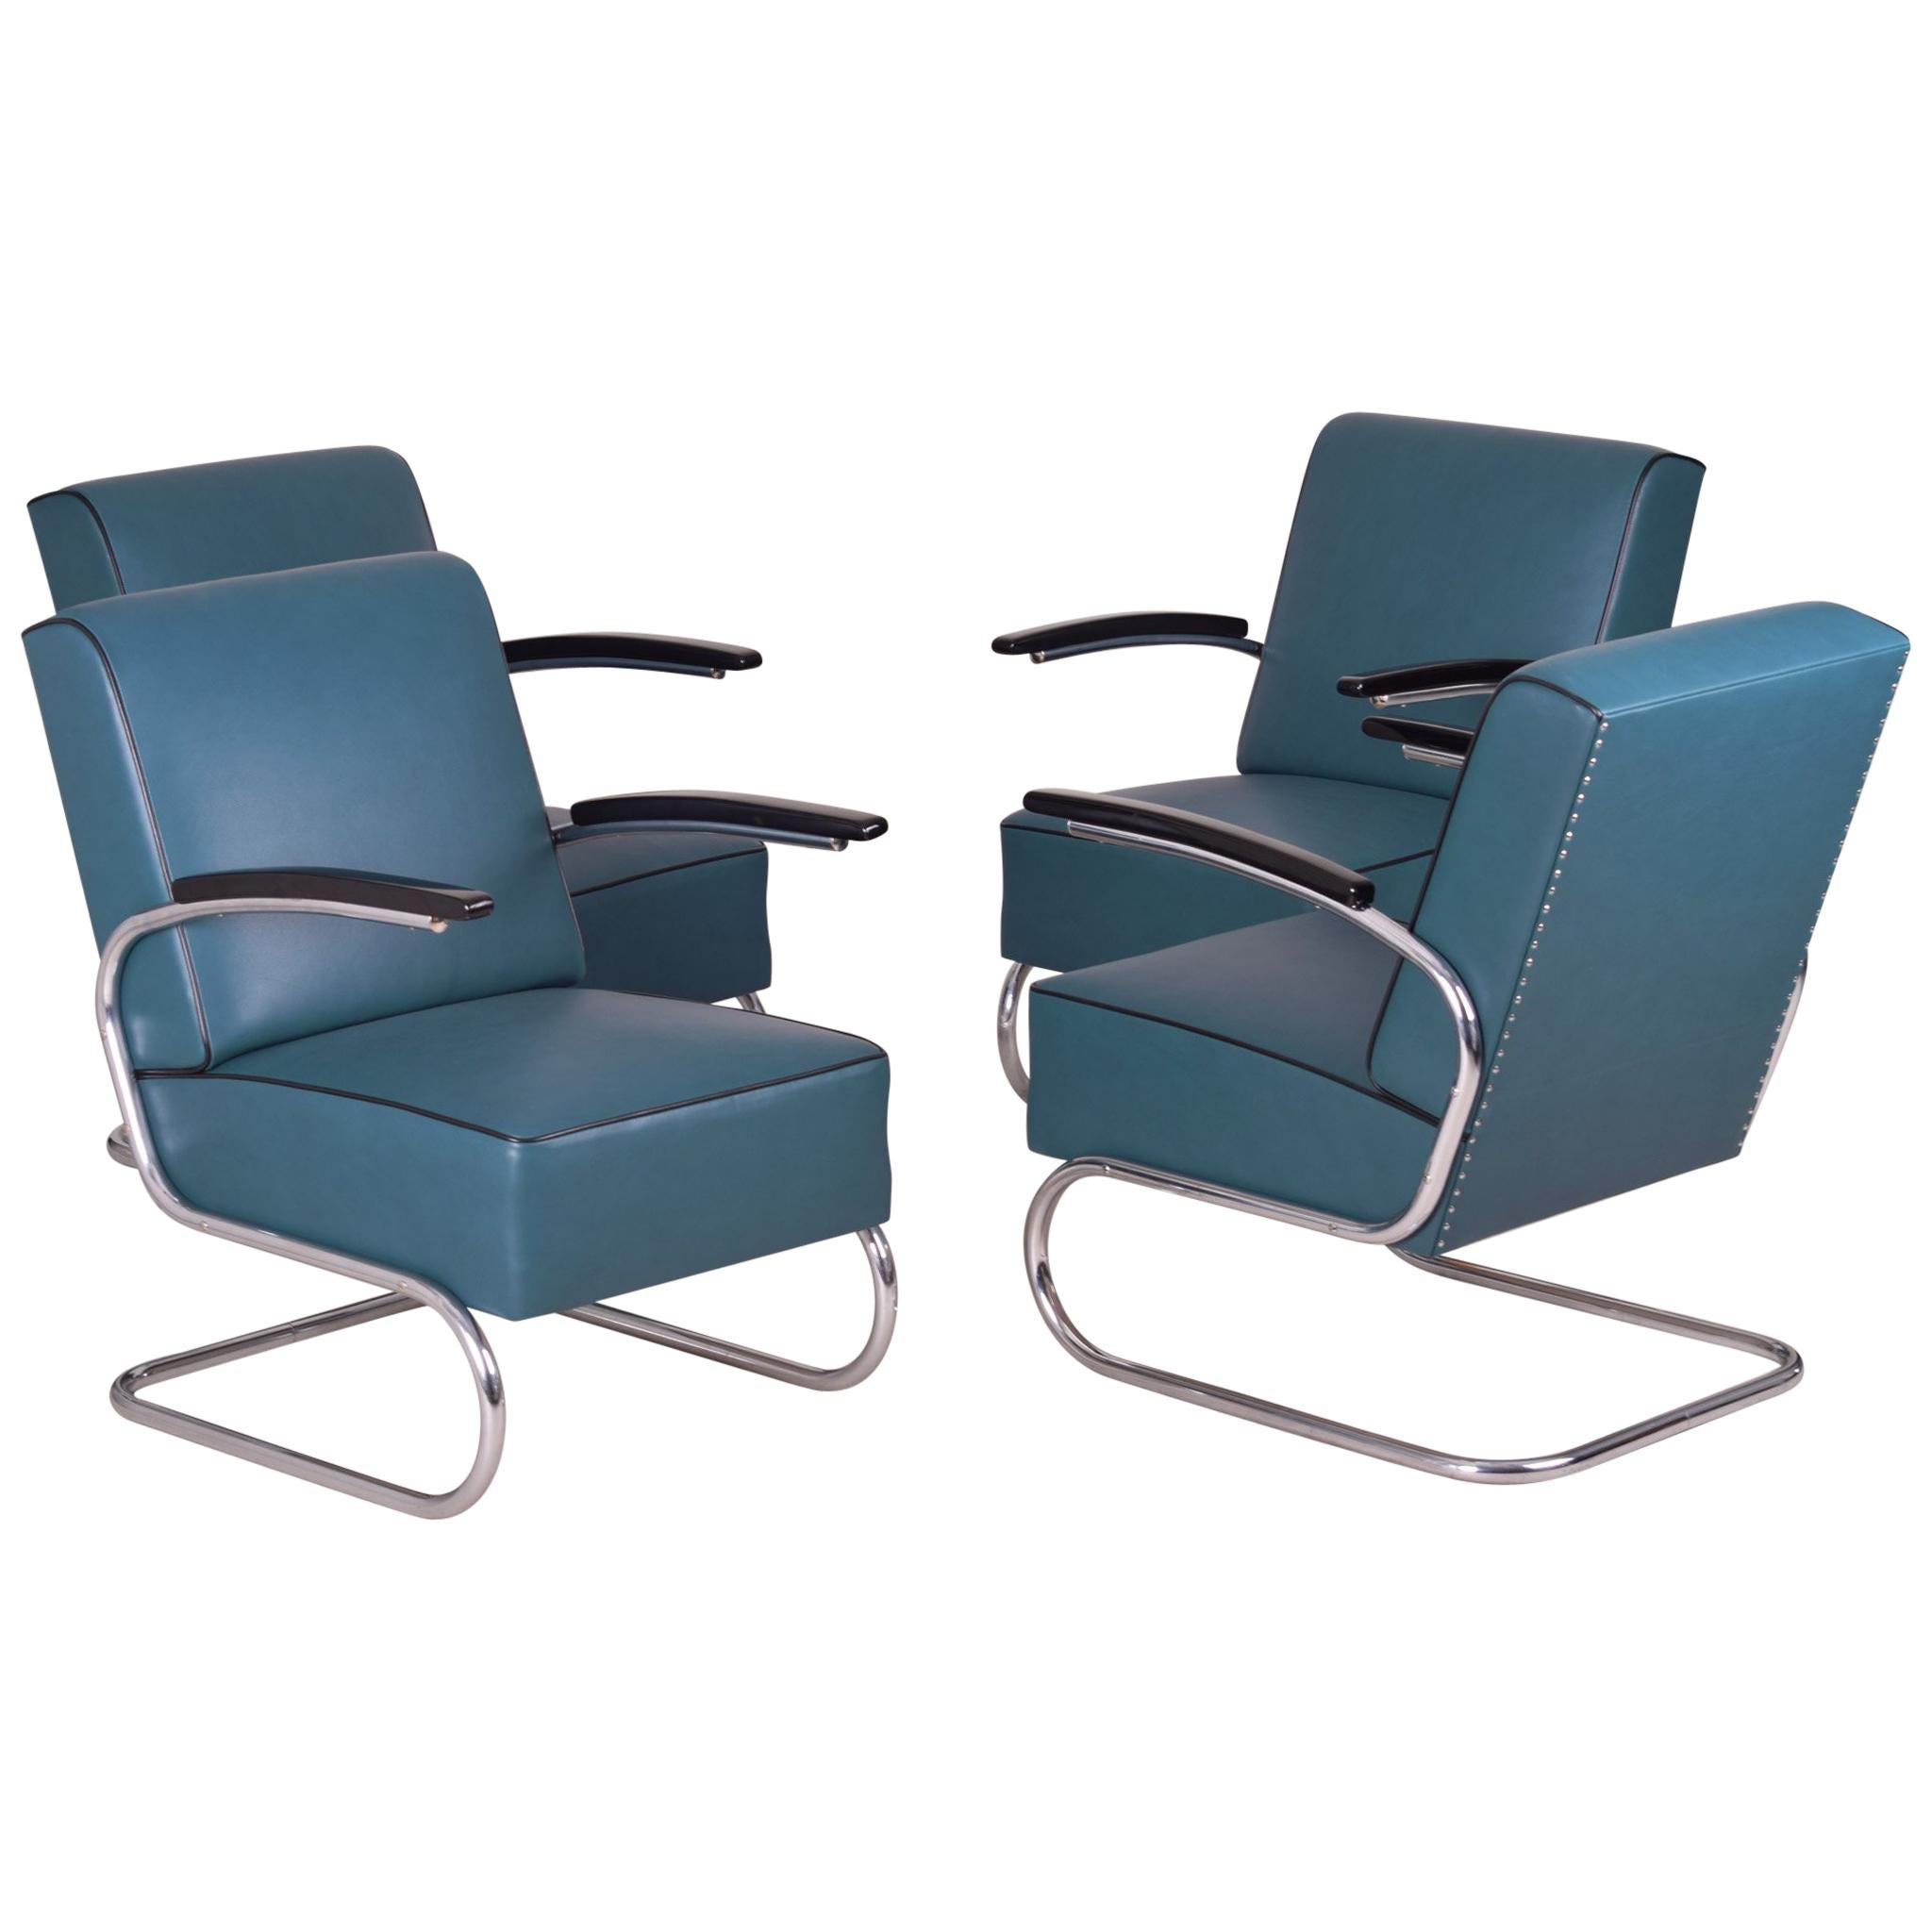 4 Freischwinger-Sessel aus Stahlrohr im Art-déco-Stil, Chrom, neues blaues Leder